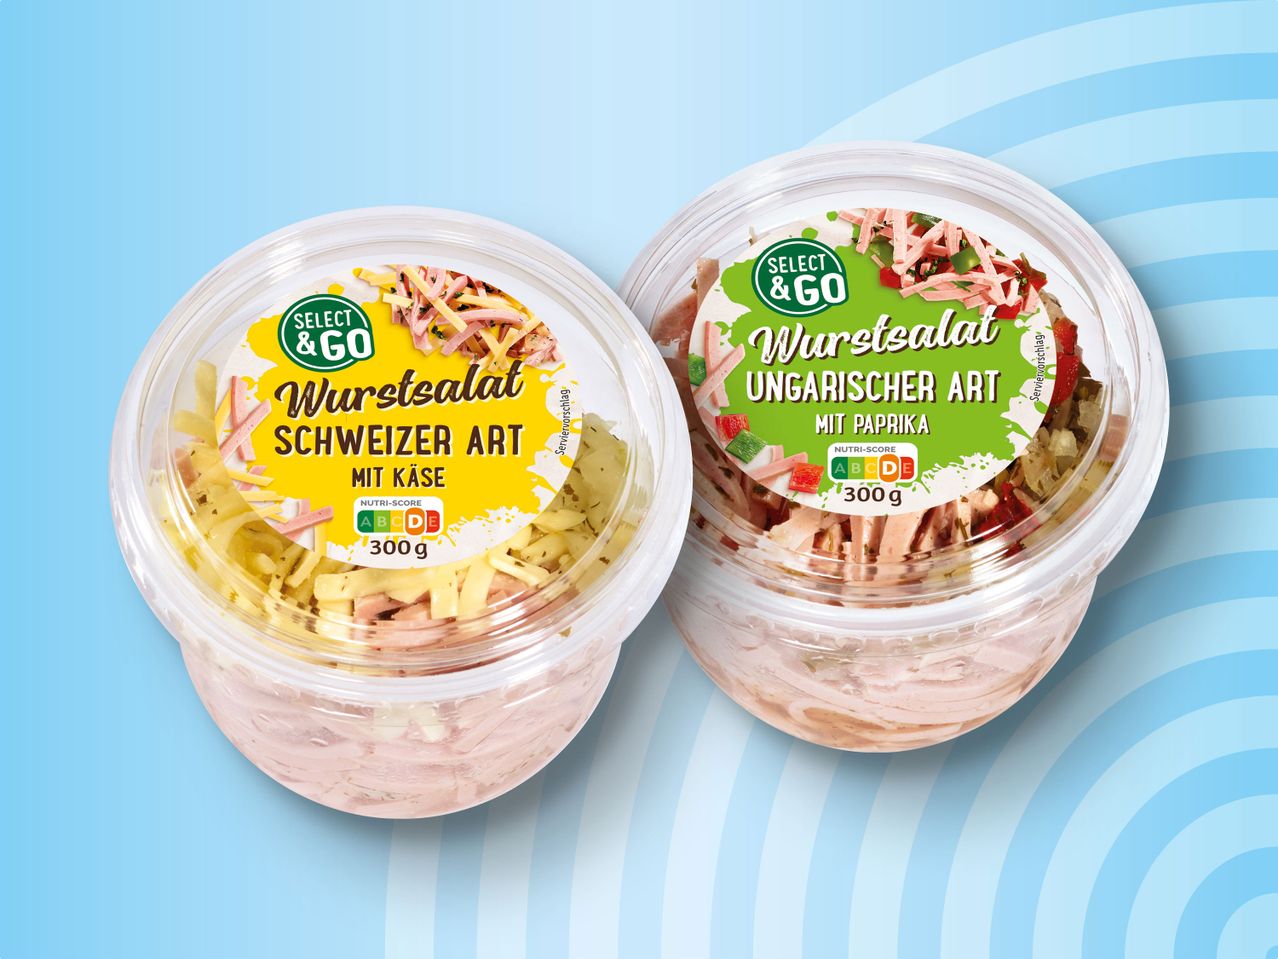 Becher & Wurstsalat Go Select im